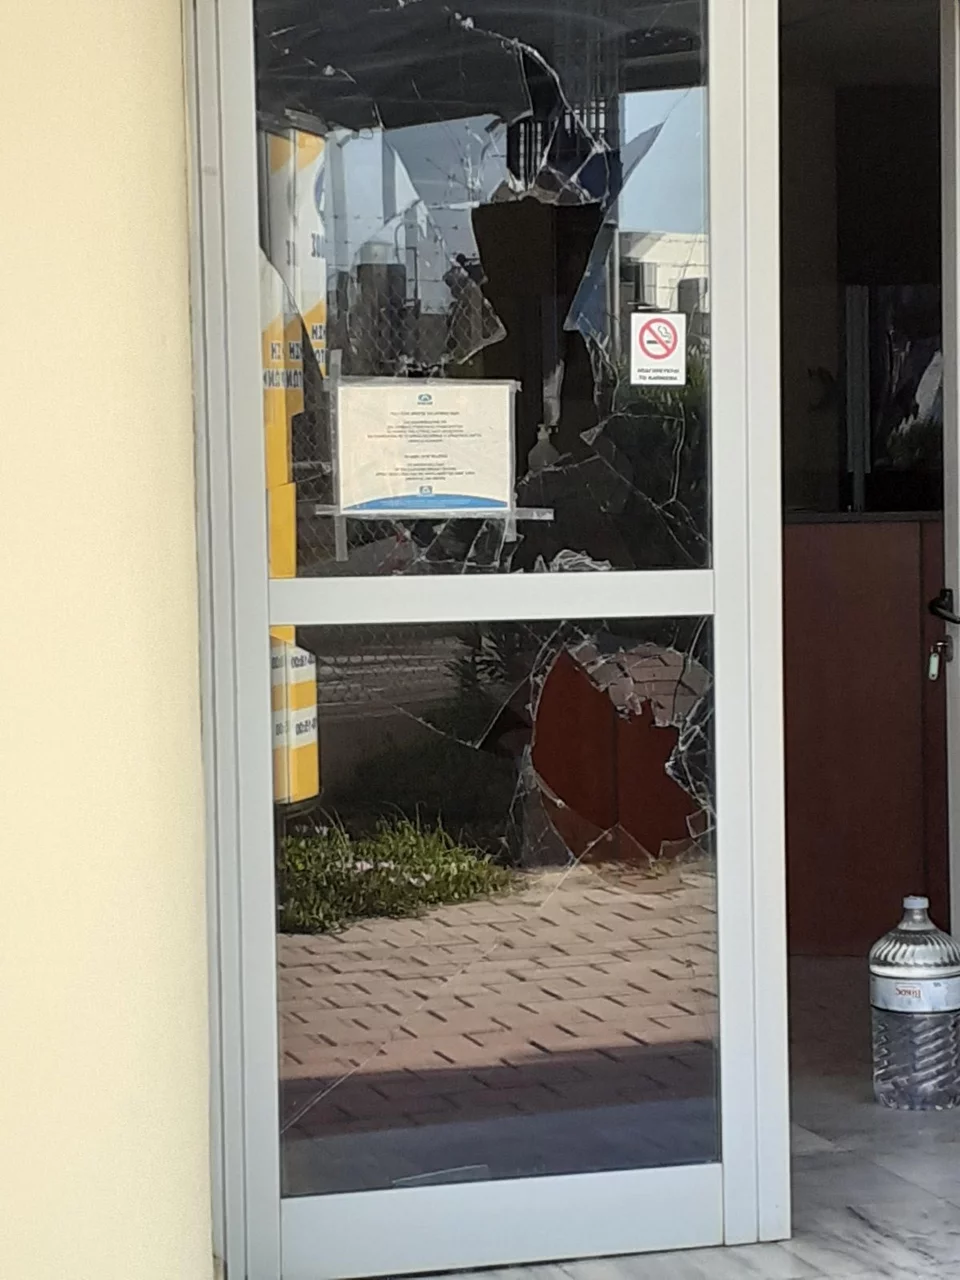 Δείτε φωτογραφίες από την επίθεση του Ρουβίκωνα στα γραφεία της Αττικής Οδού